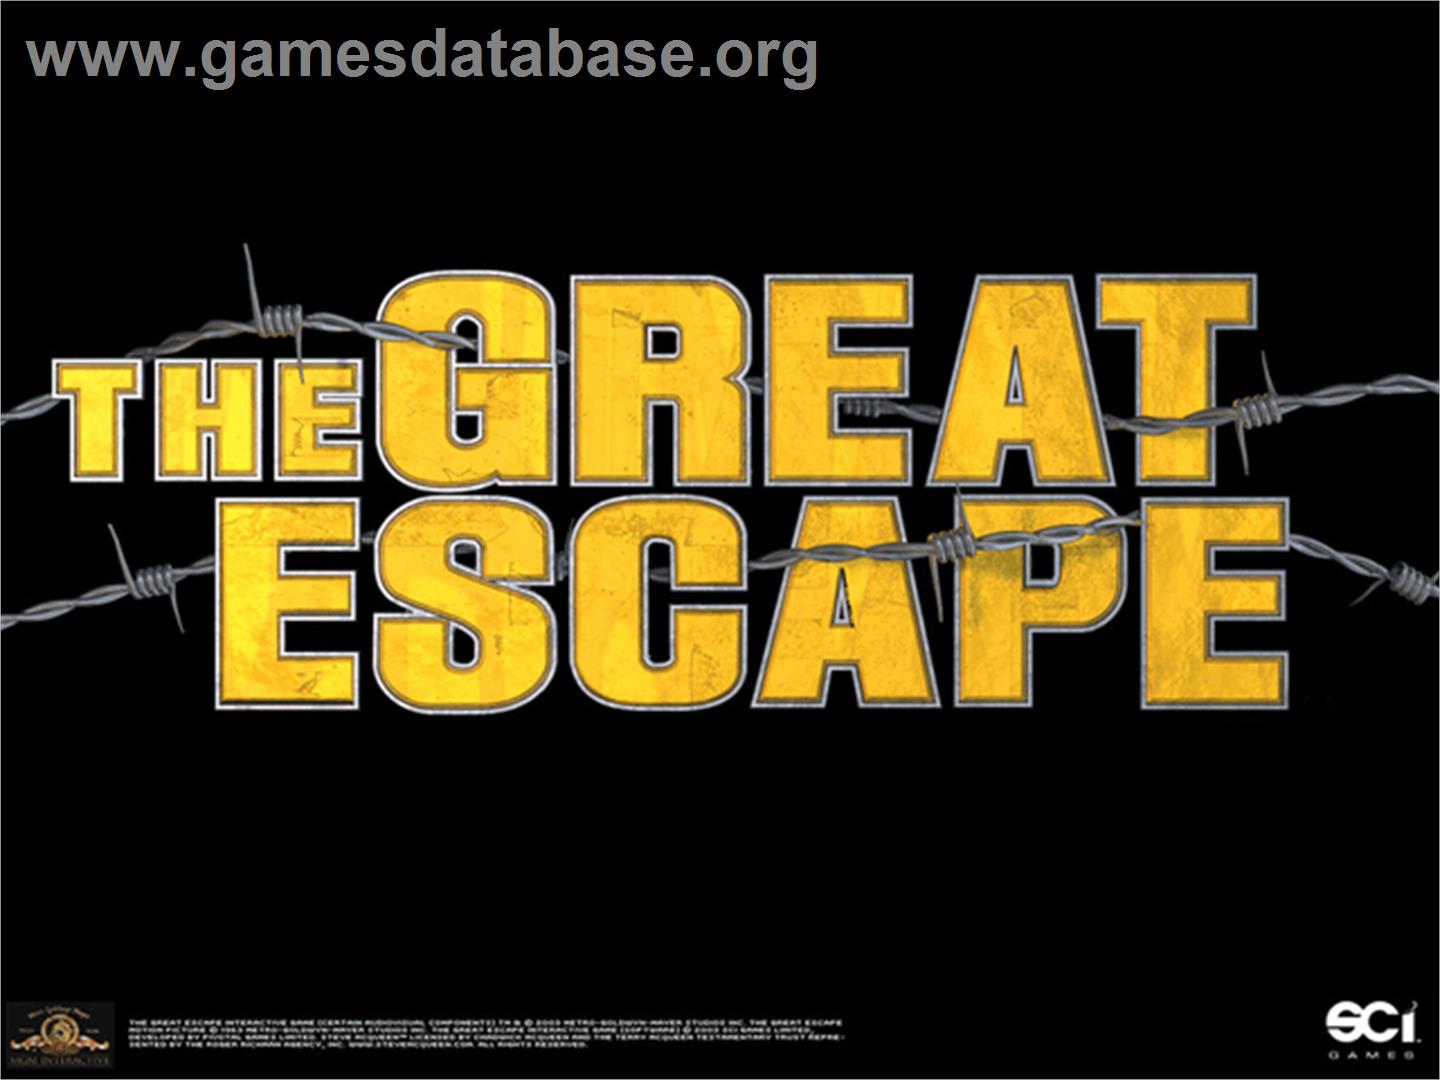 Great Escape - Microsoft Xbox - Artwork - Title Screen